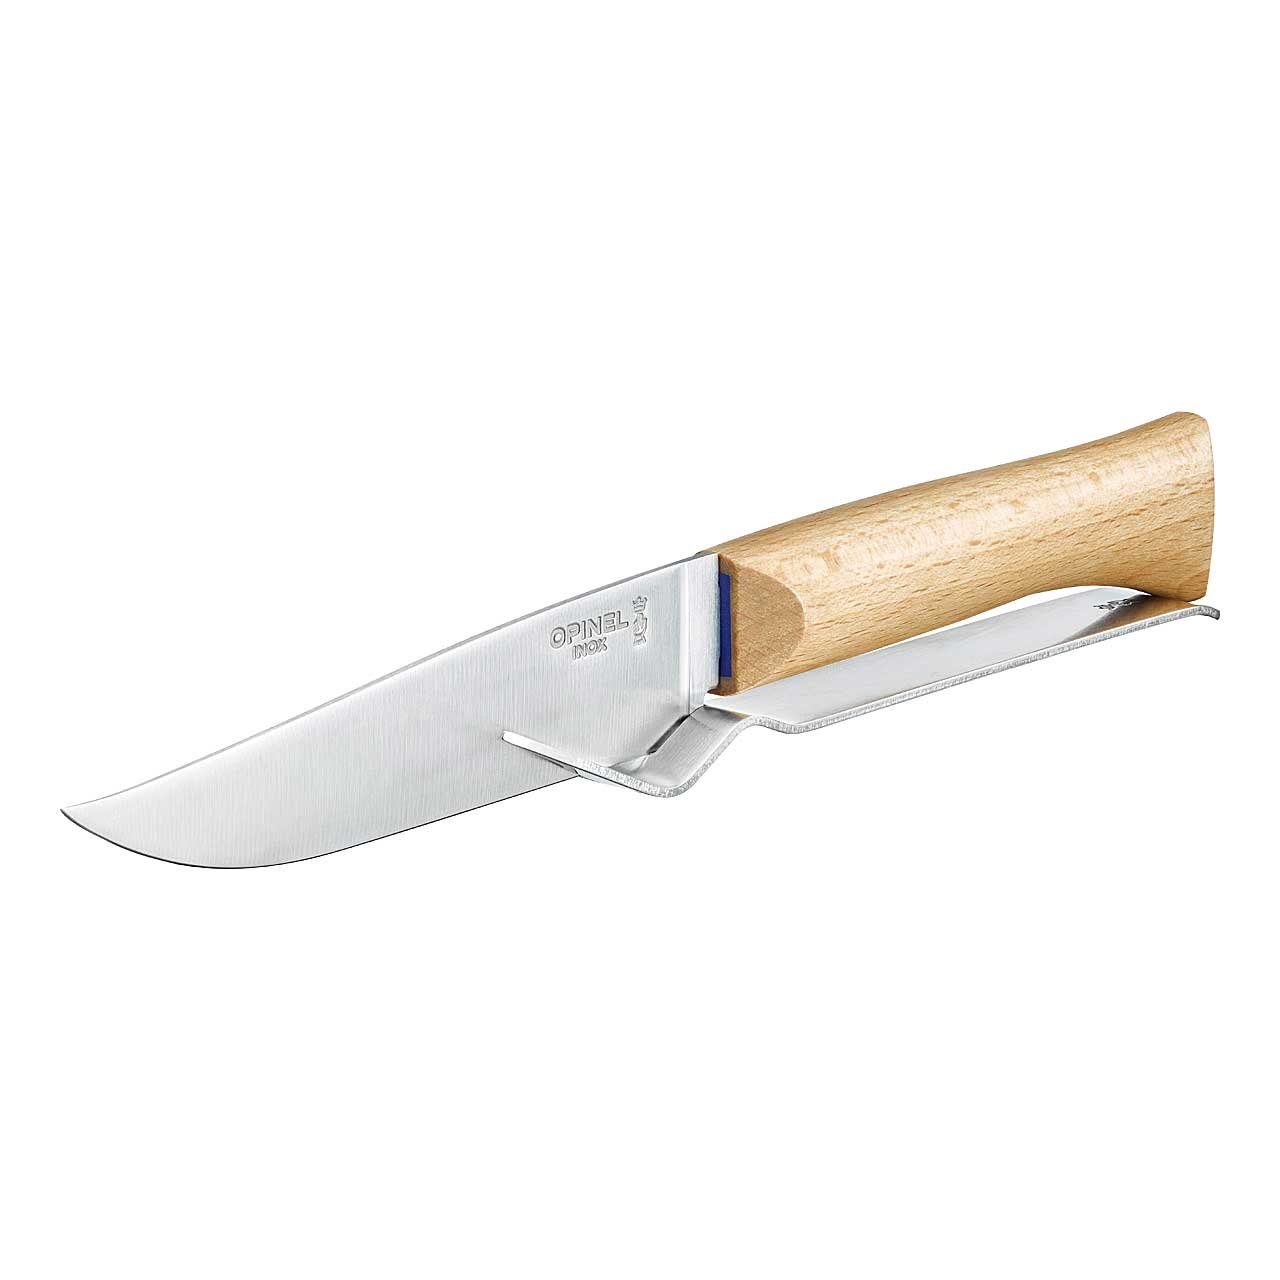 Opinel Käsemesser Set Messer Größe 10 mit Holzgriff und Gabel, rostfrei